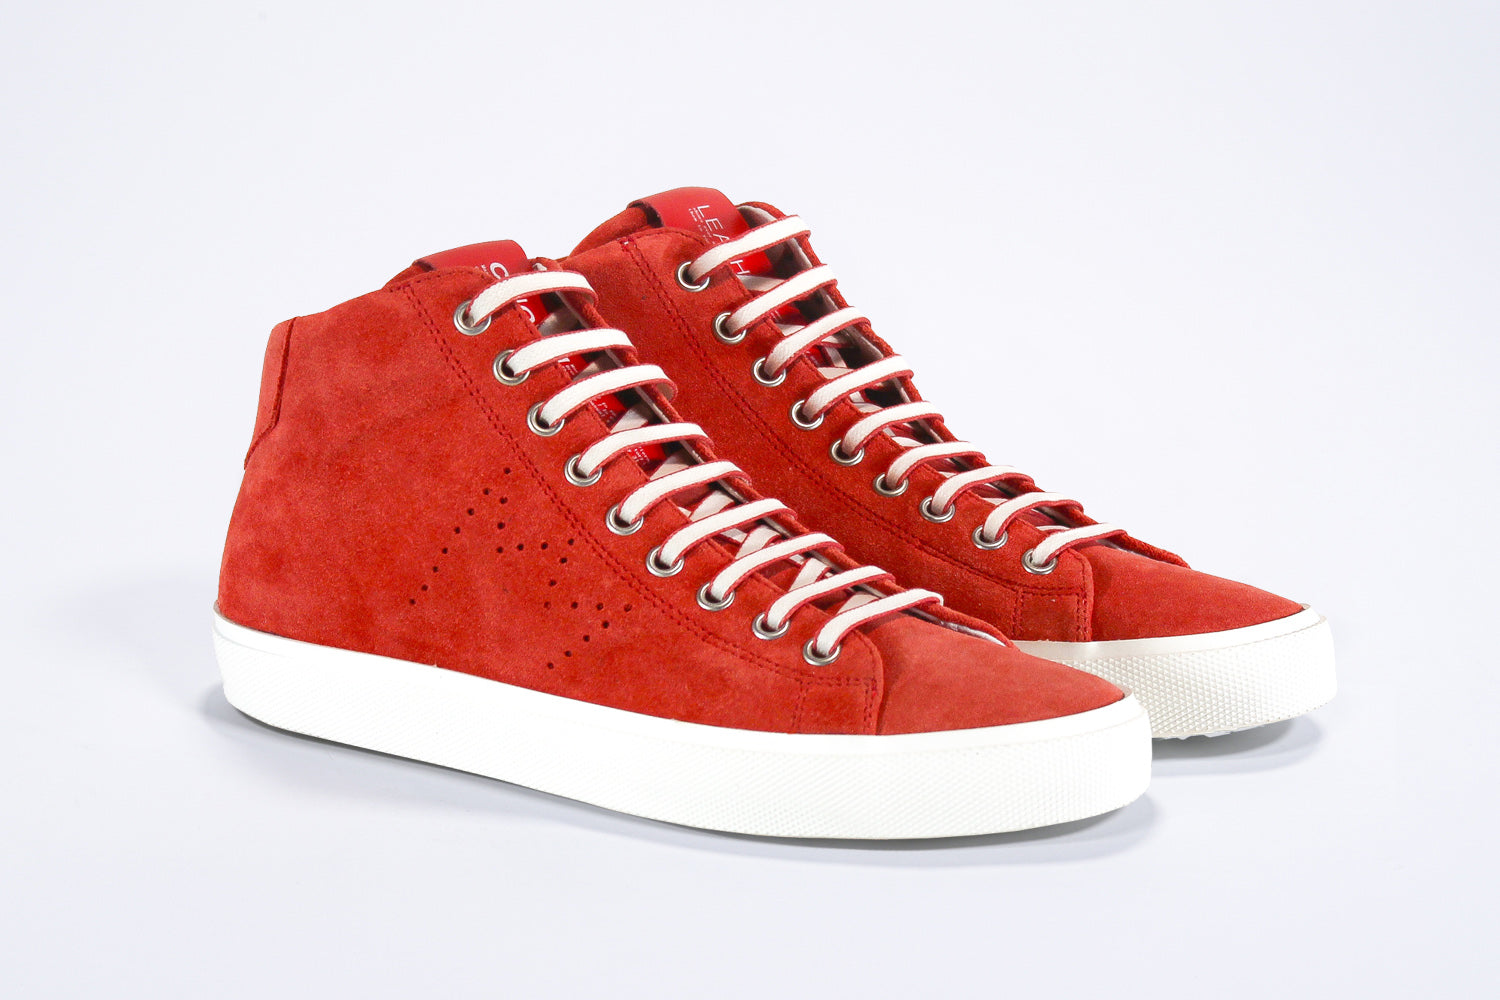 Dreiviertelansicht der Vorderseite von sneaker aus rotem Wildleder und Leder, mit Innenreißverschluss und weißer Sohle.